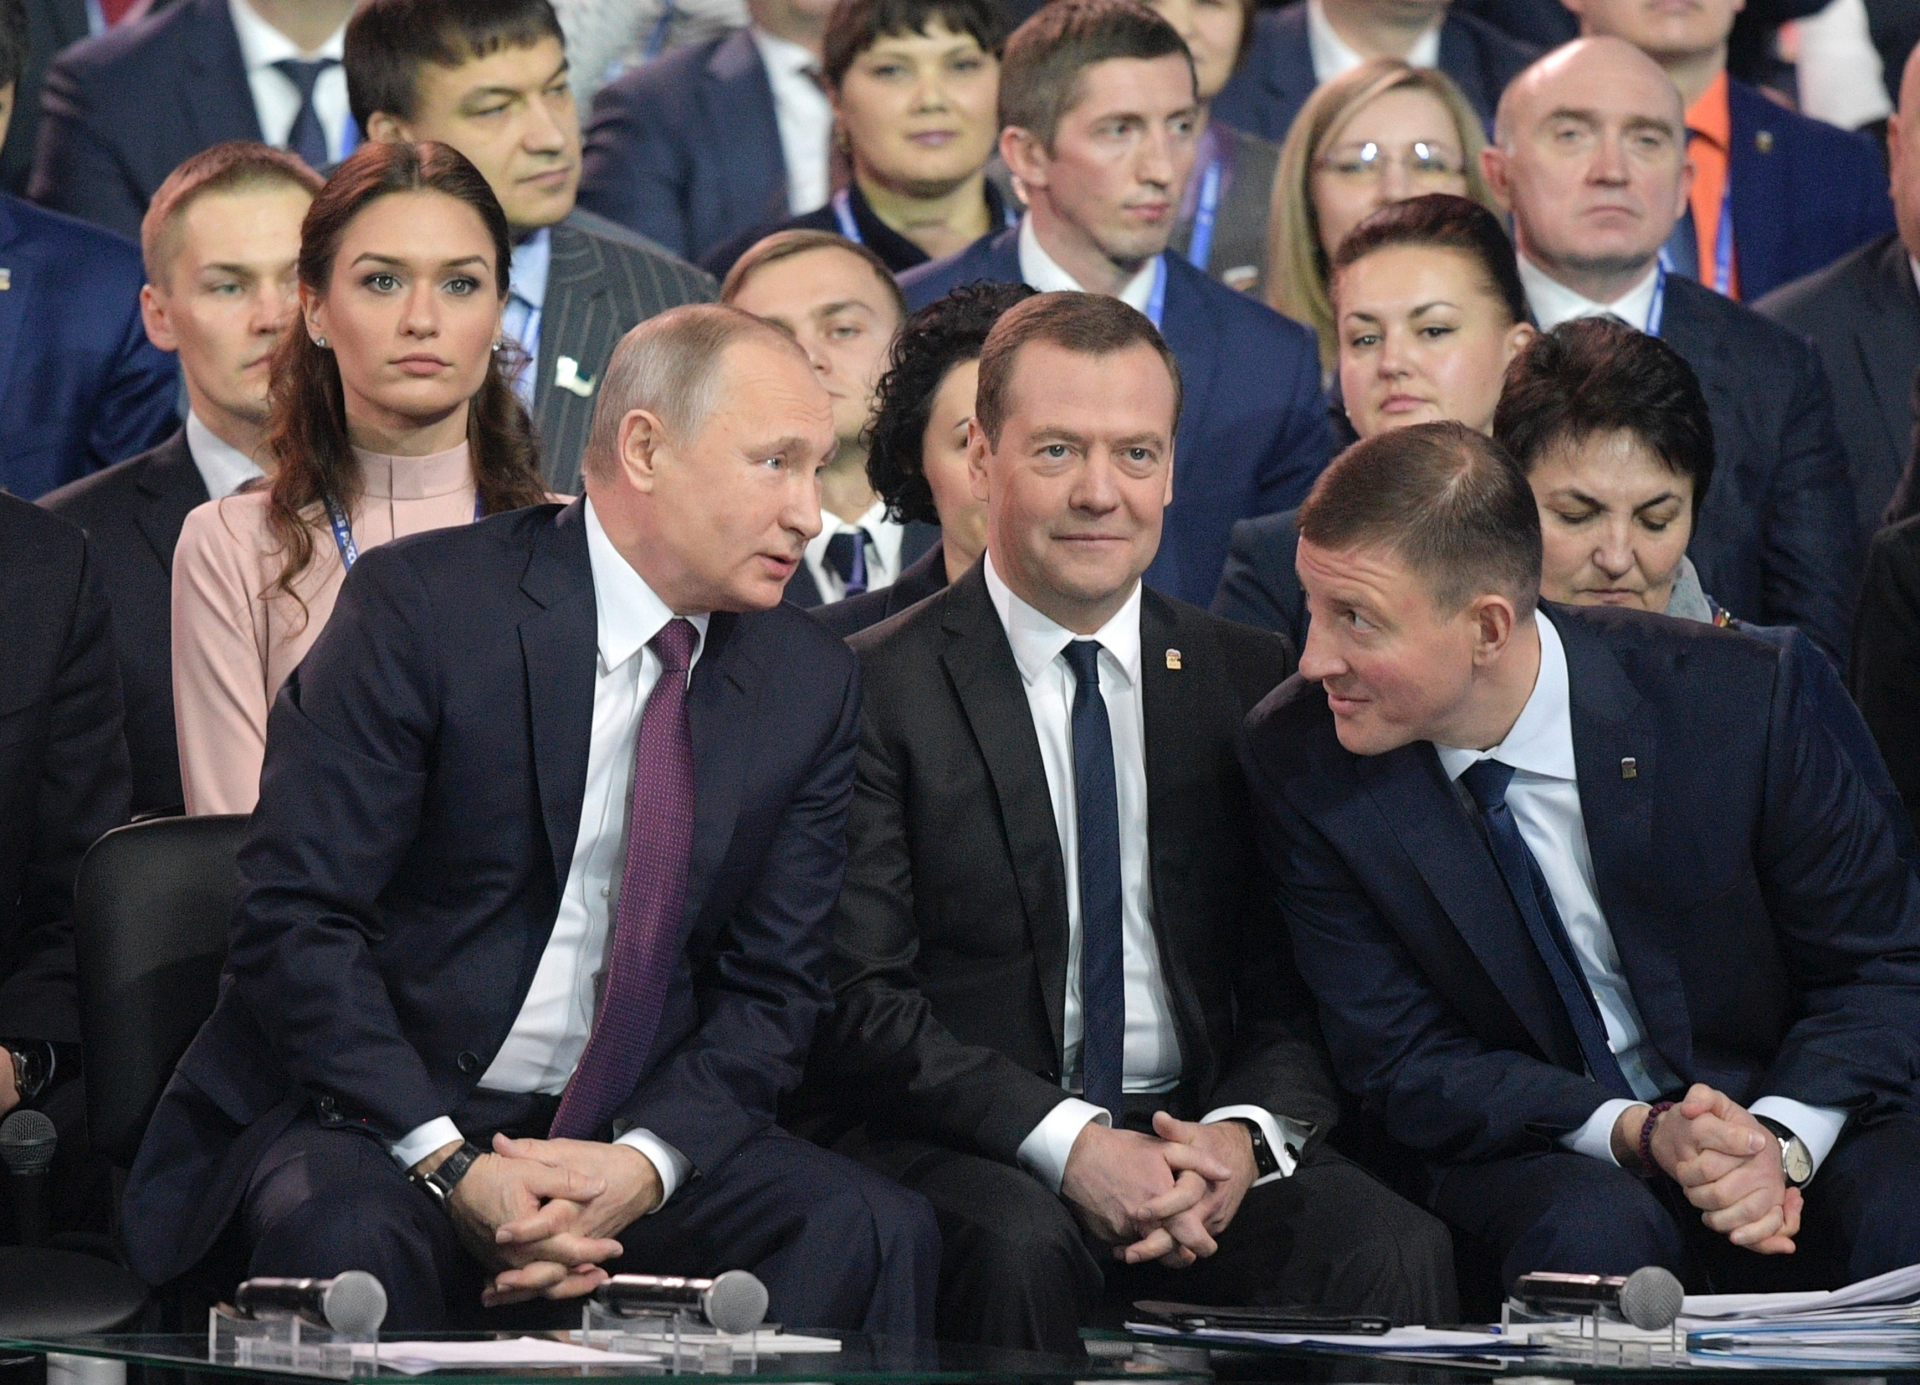 Медведев показал карту россии